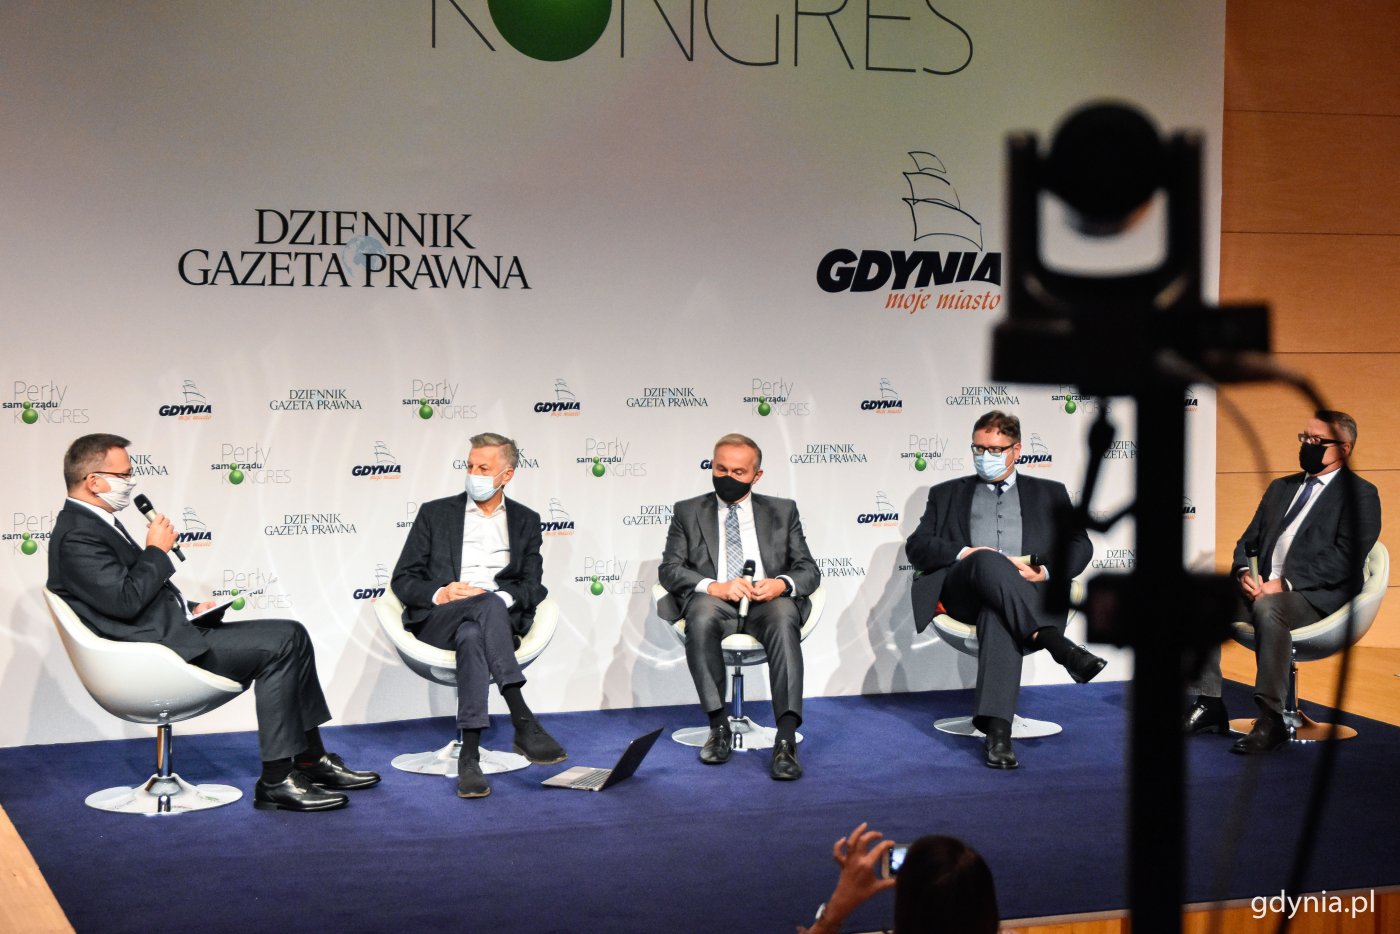 Sesja otwierająca tegoroczną edycję kongresu. Trzeci od lewej siedzi Wojciech Szczurek, prezydent Gdyni, fot. Kamil Złoch